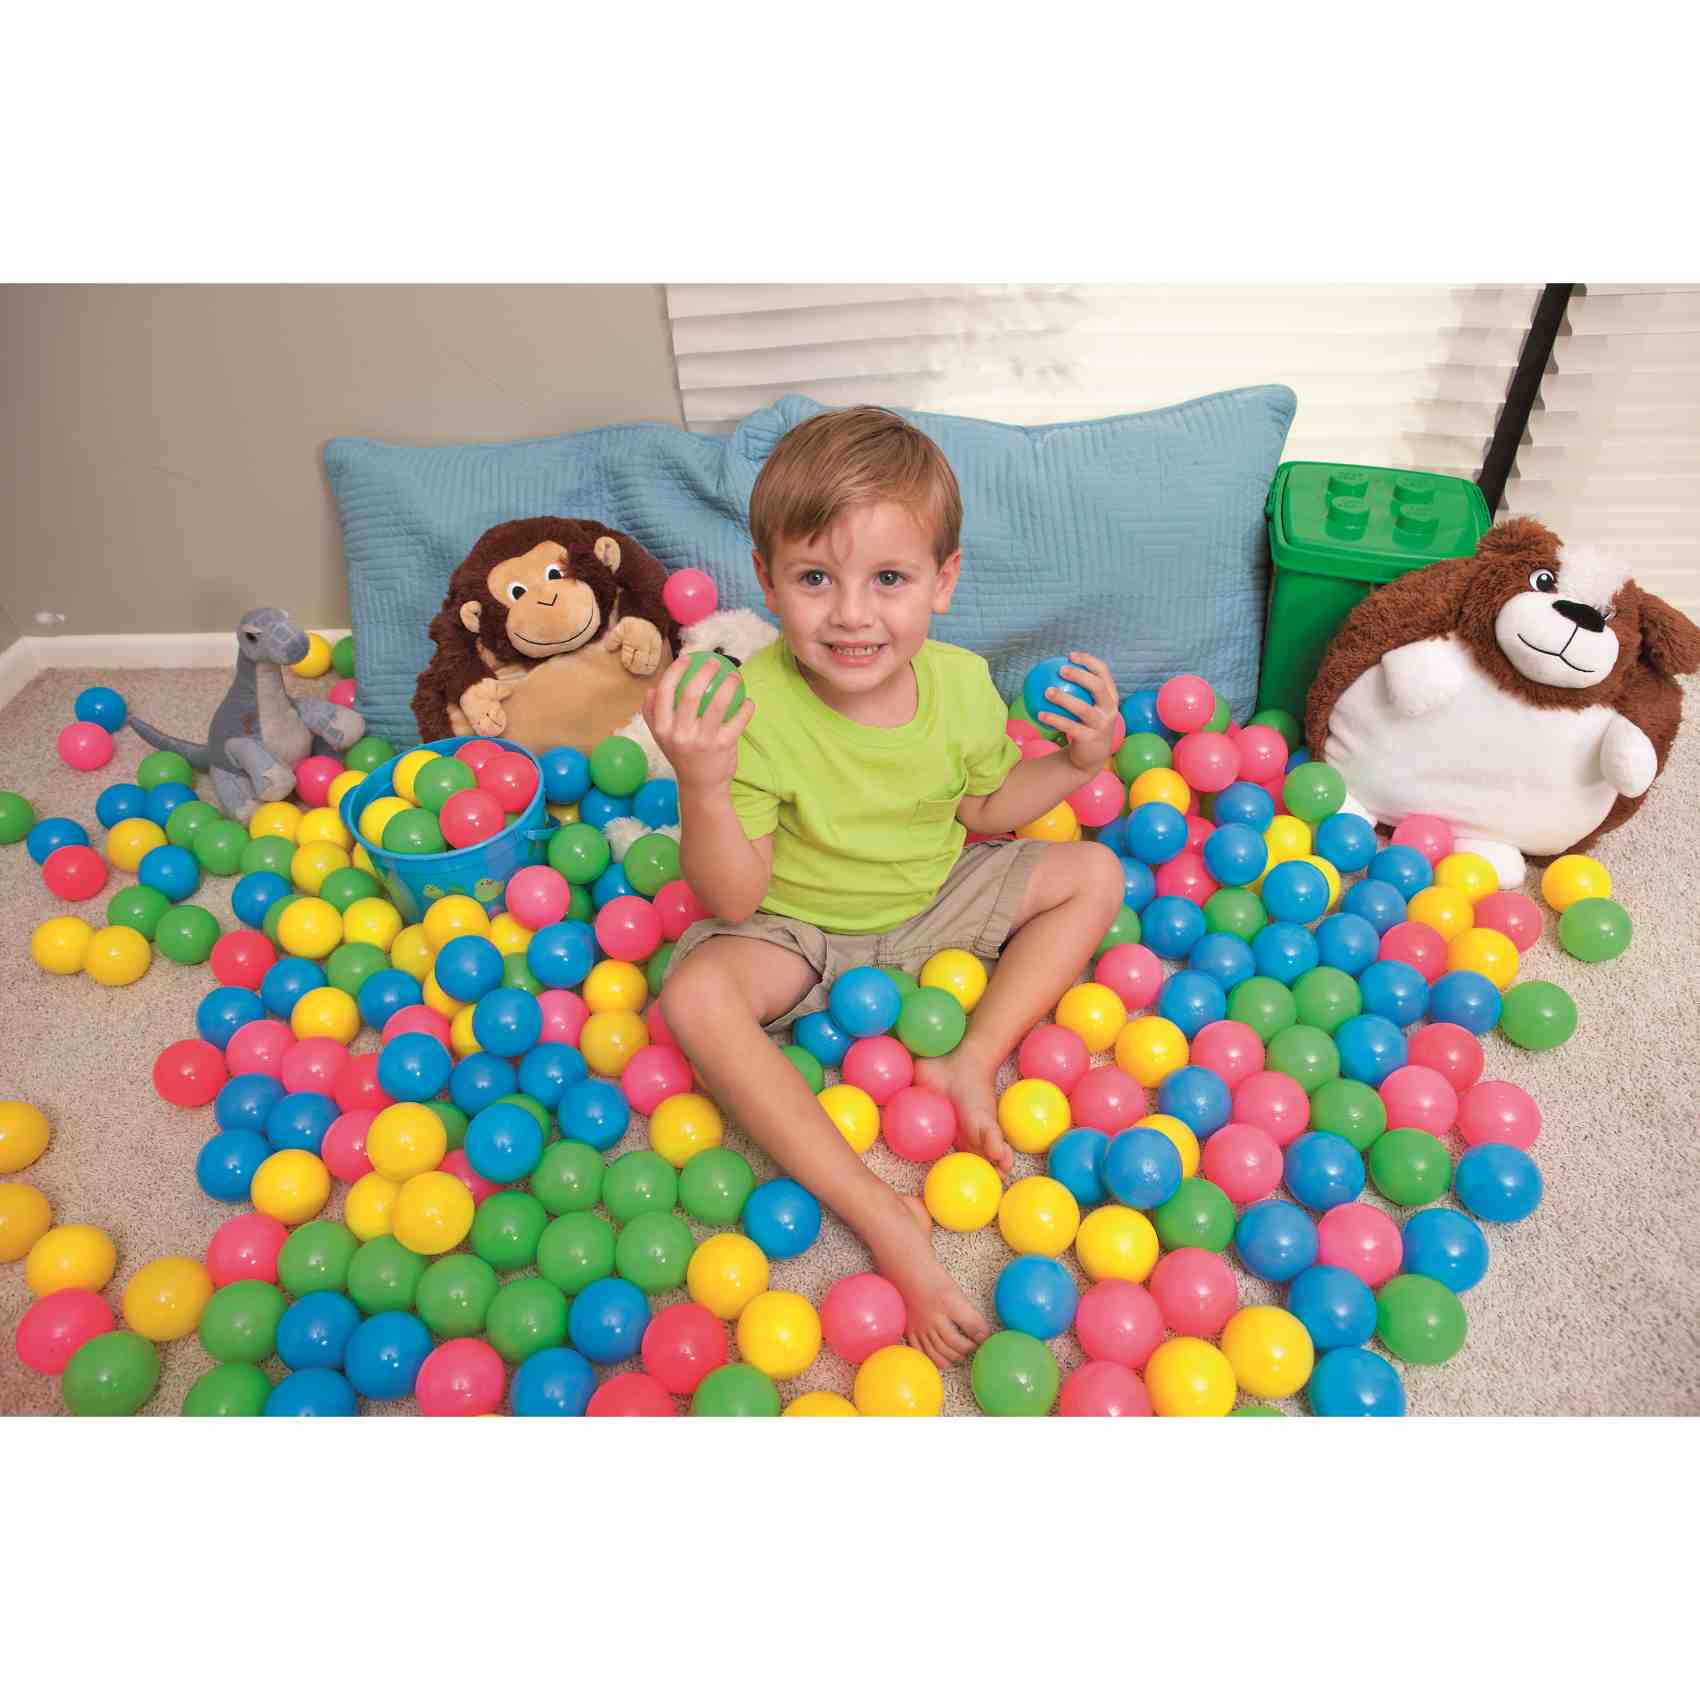 Bestway Splash and Play Bouncing Balls Multicolour 6.5cm 100 PCS